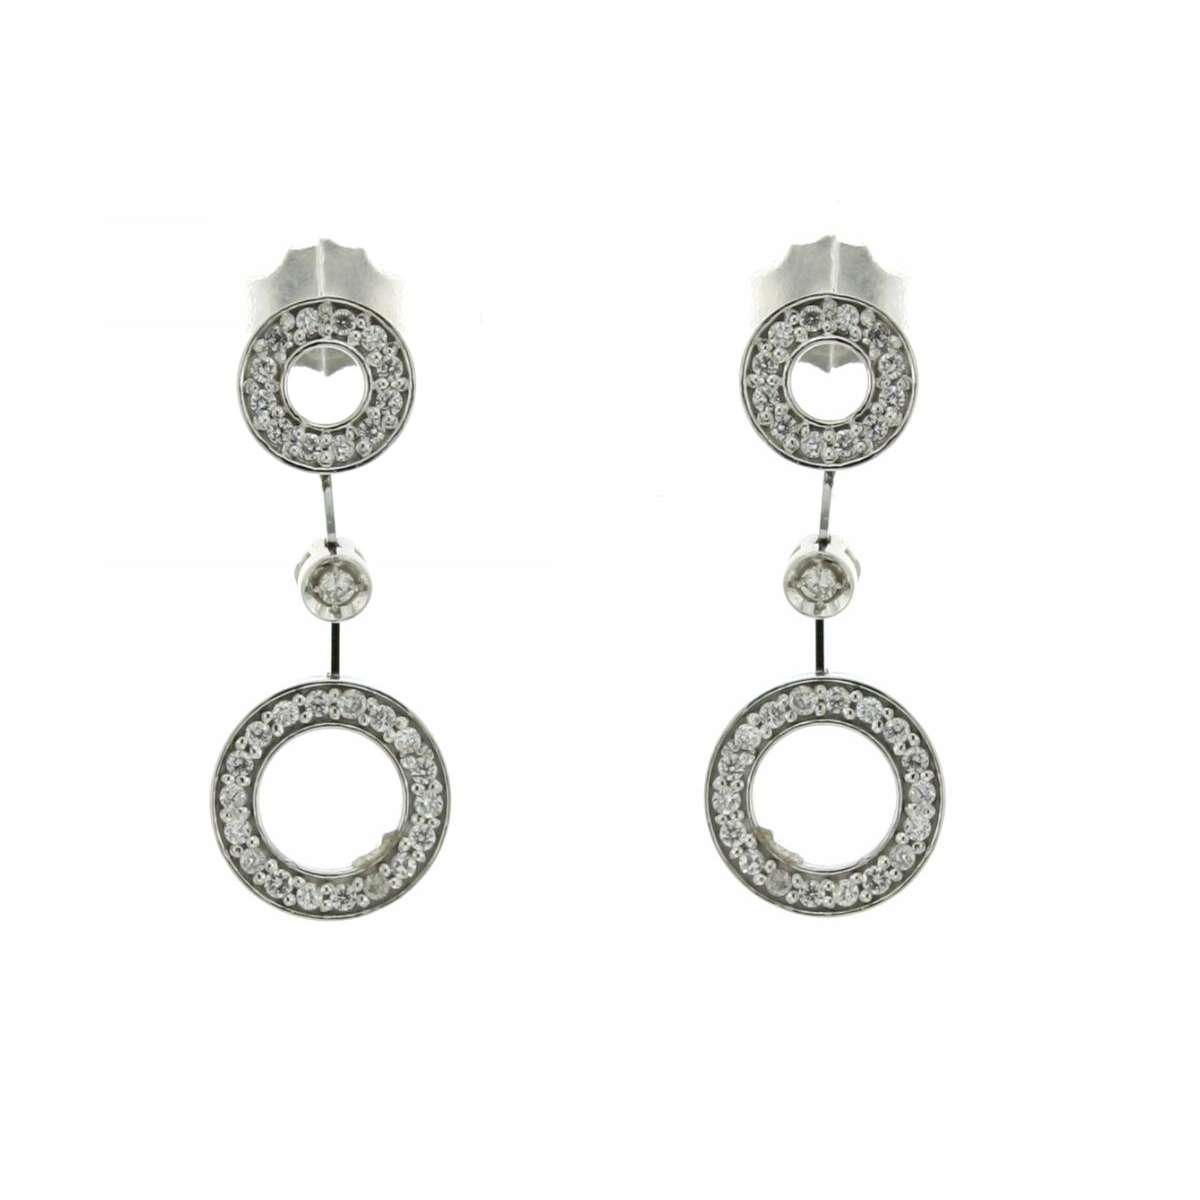 Dangling earrings 0.34 carats diamonds G-VS1